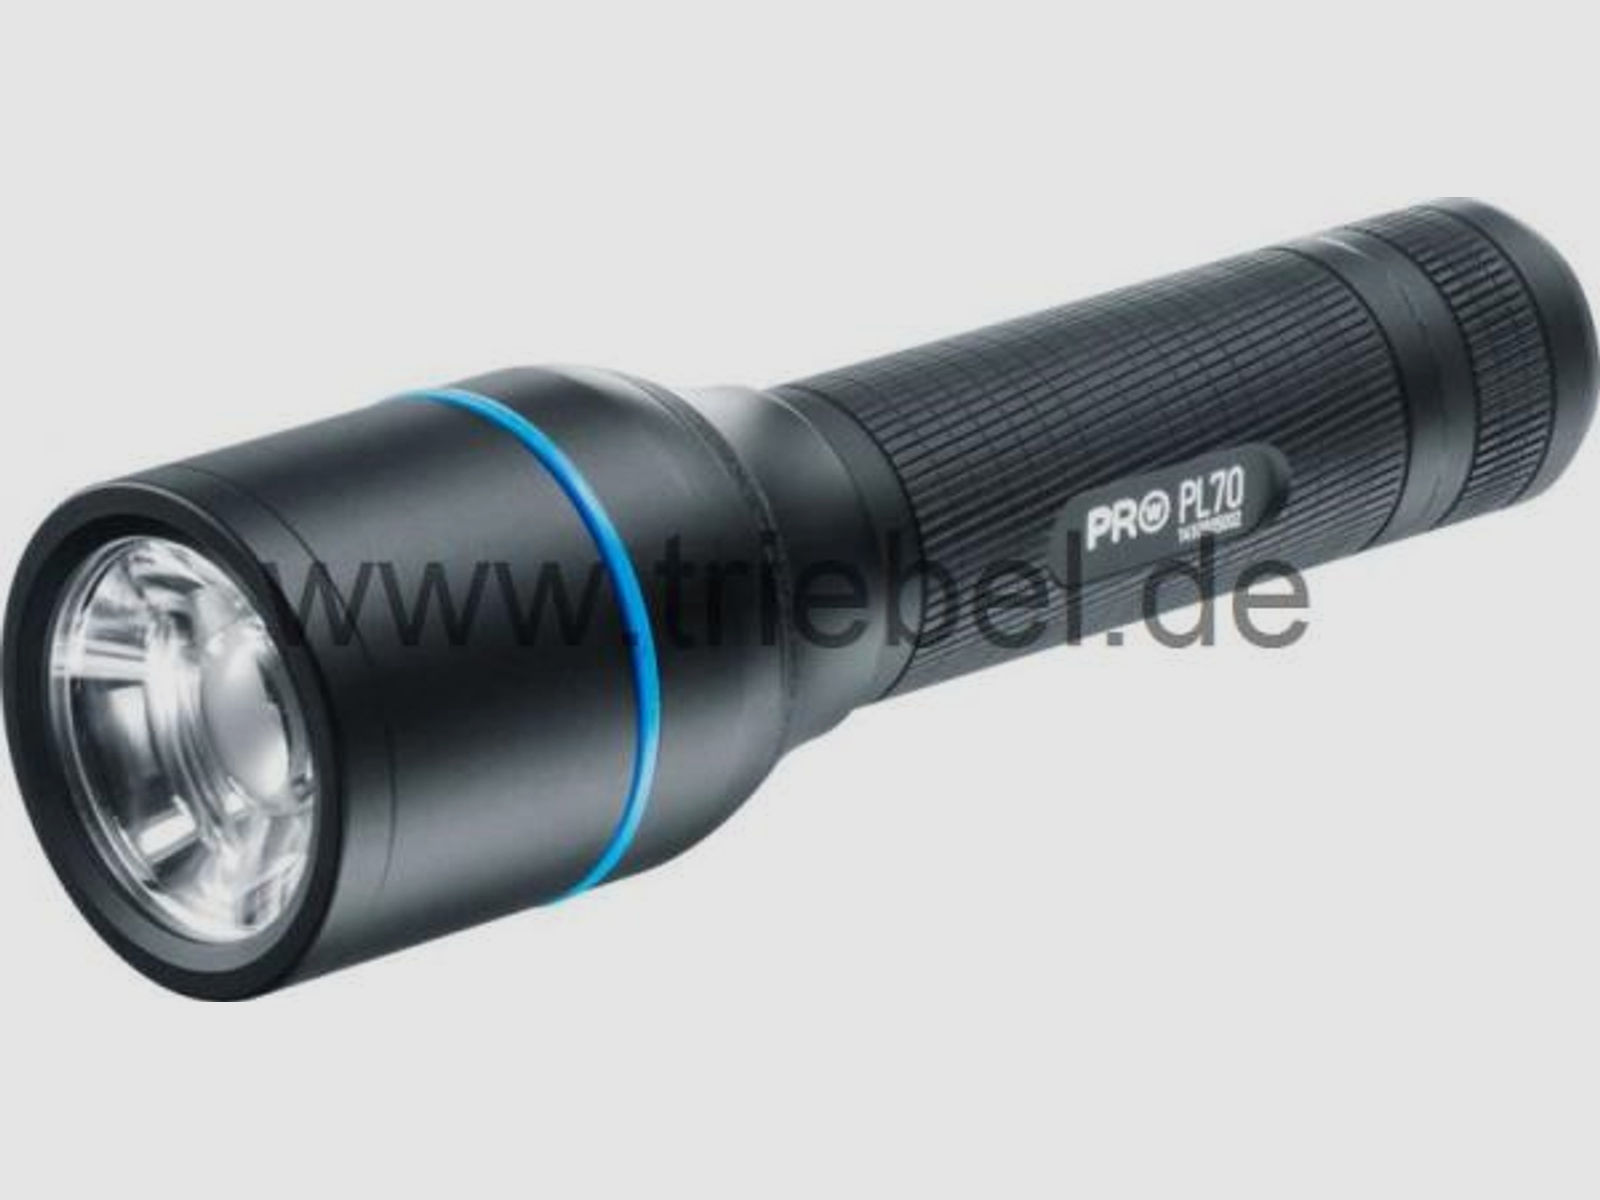 WALTHER Taschenlampe Pro PL70 (Strobe) 935 Lumen - mit Gürteltasche